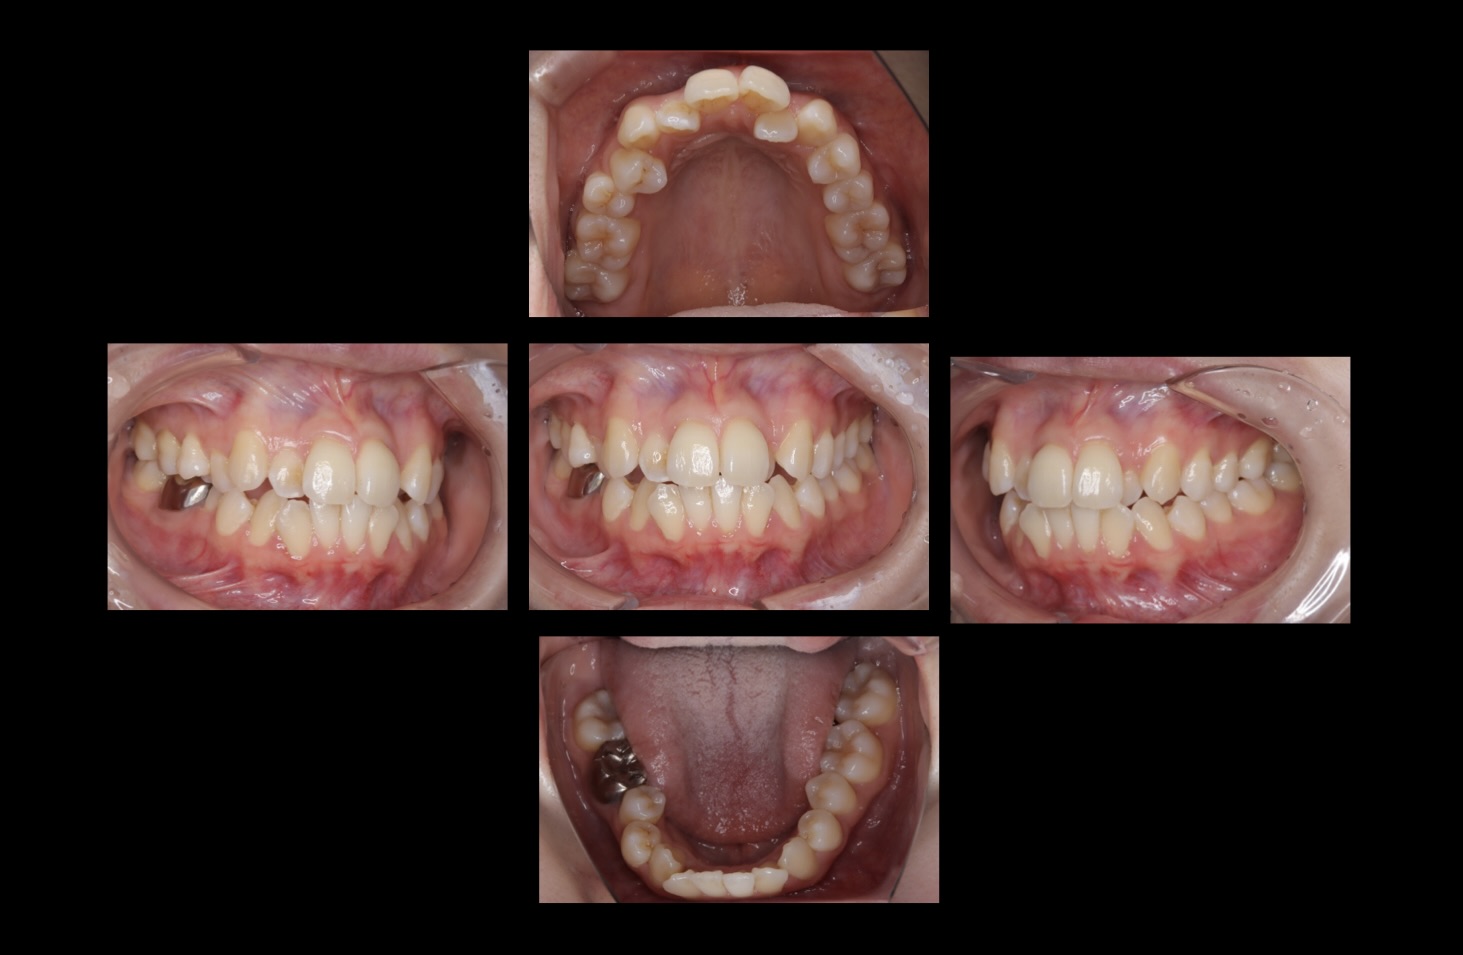 206前歯の矯正治療をマウスピース矯正で行なった症例